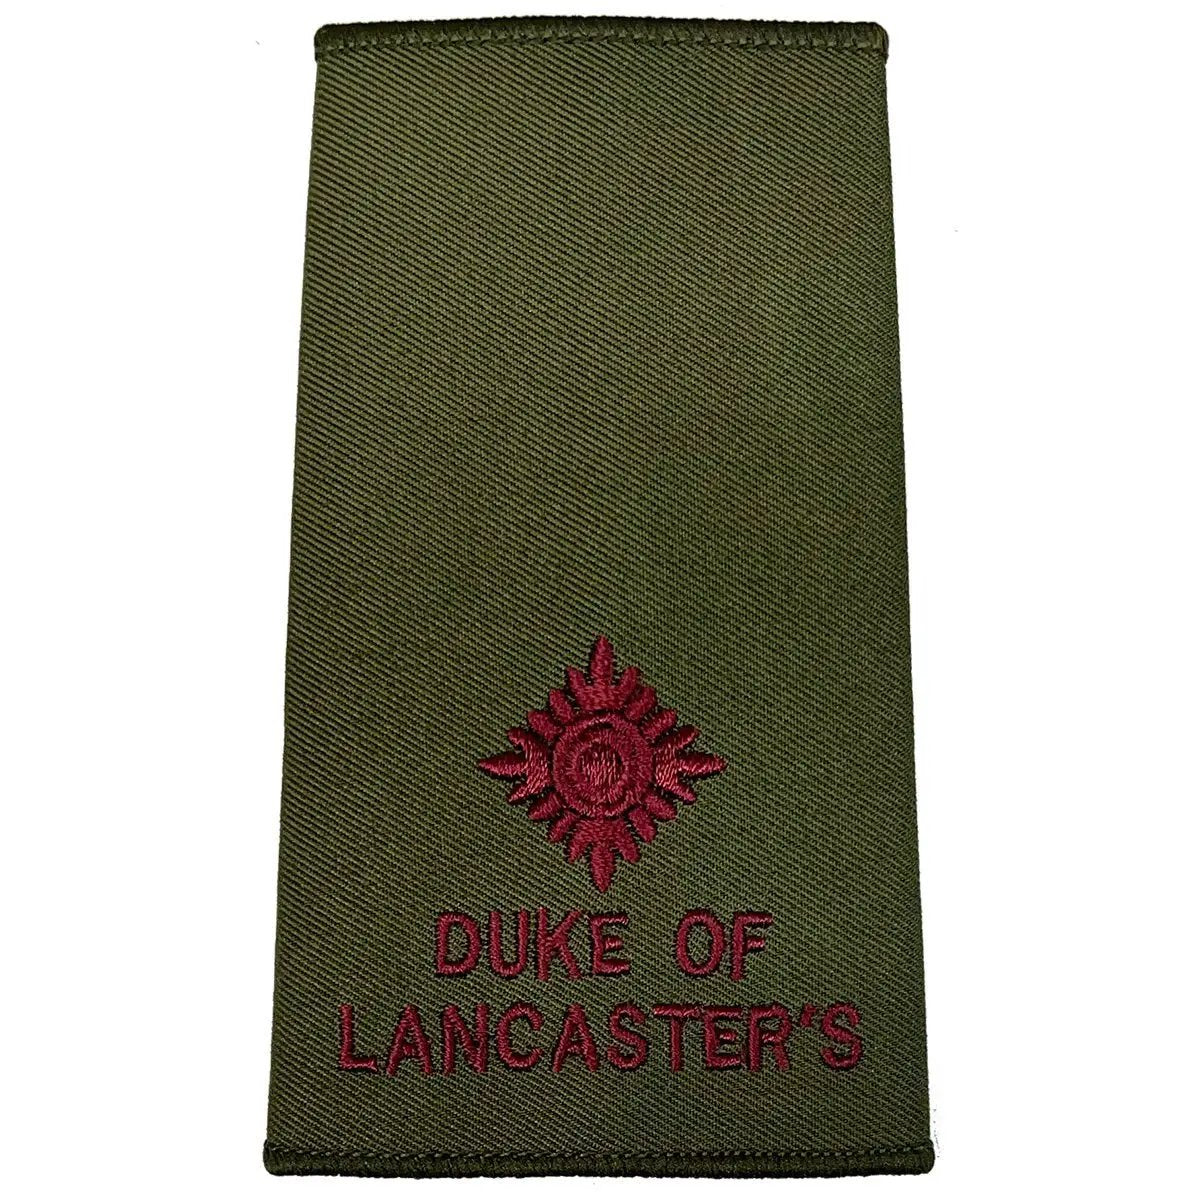 Duke of Lancaster's Olive Green Rank Slides (Pair) - John Bull Clothing